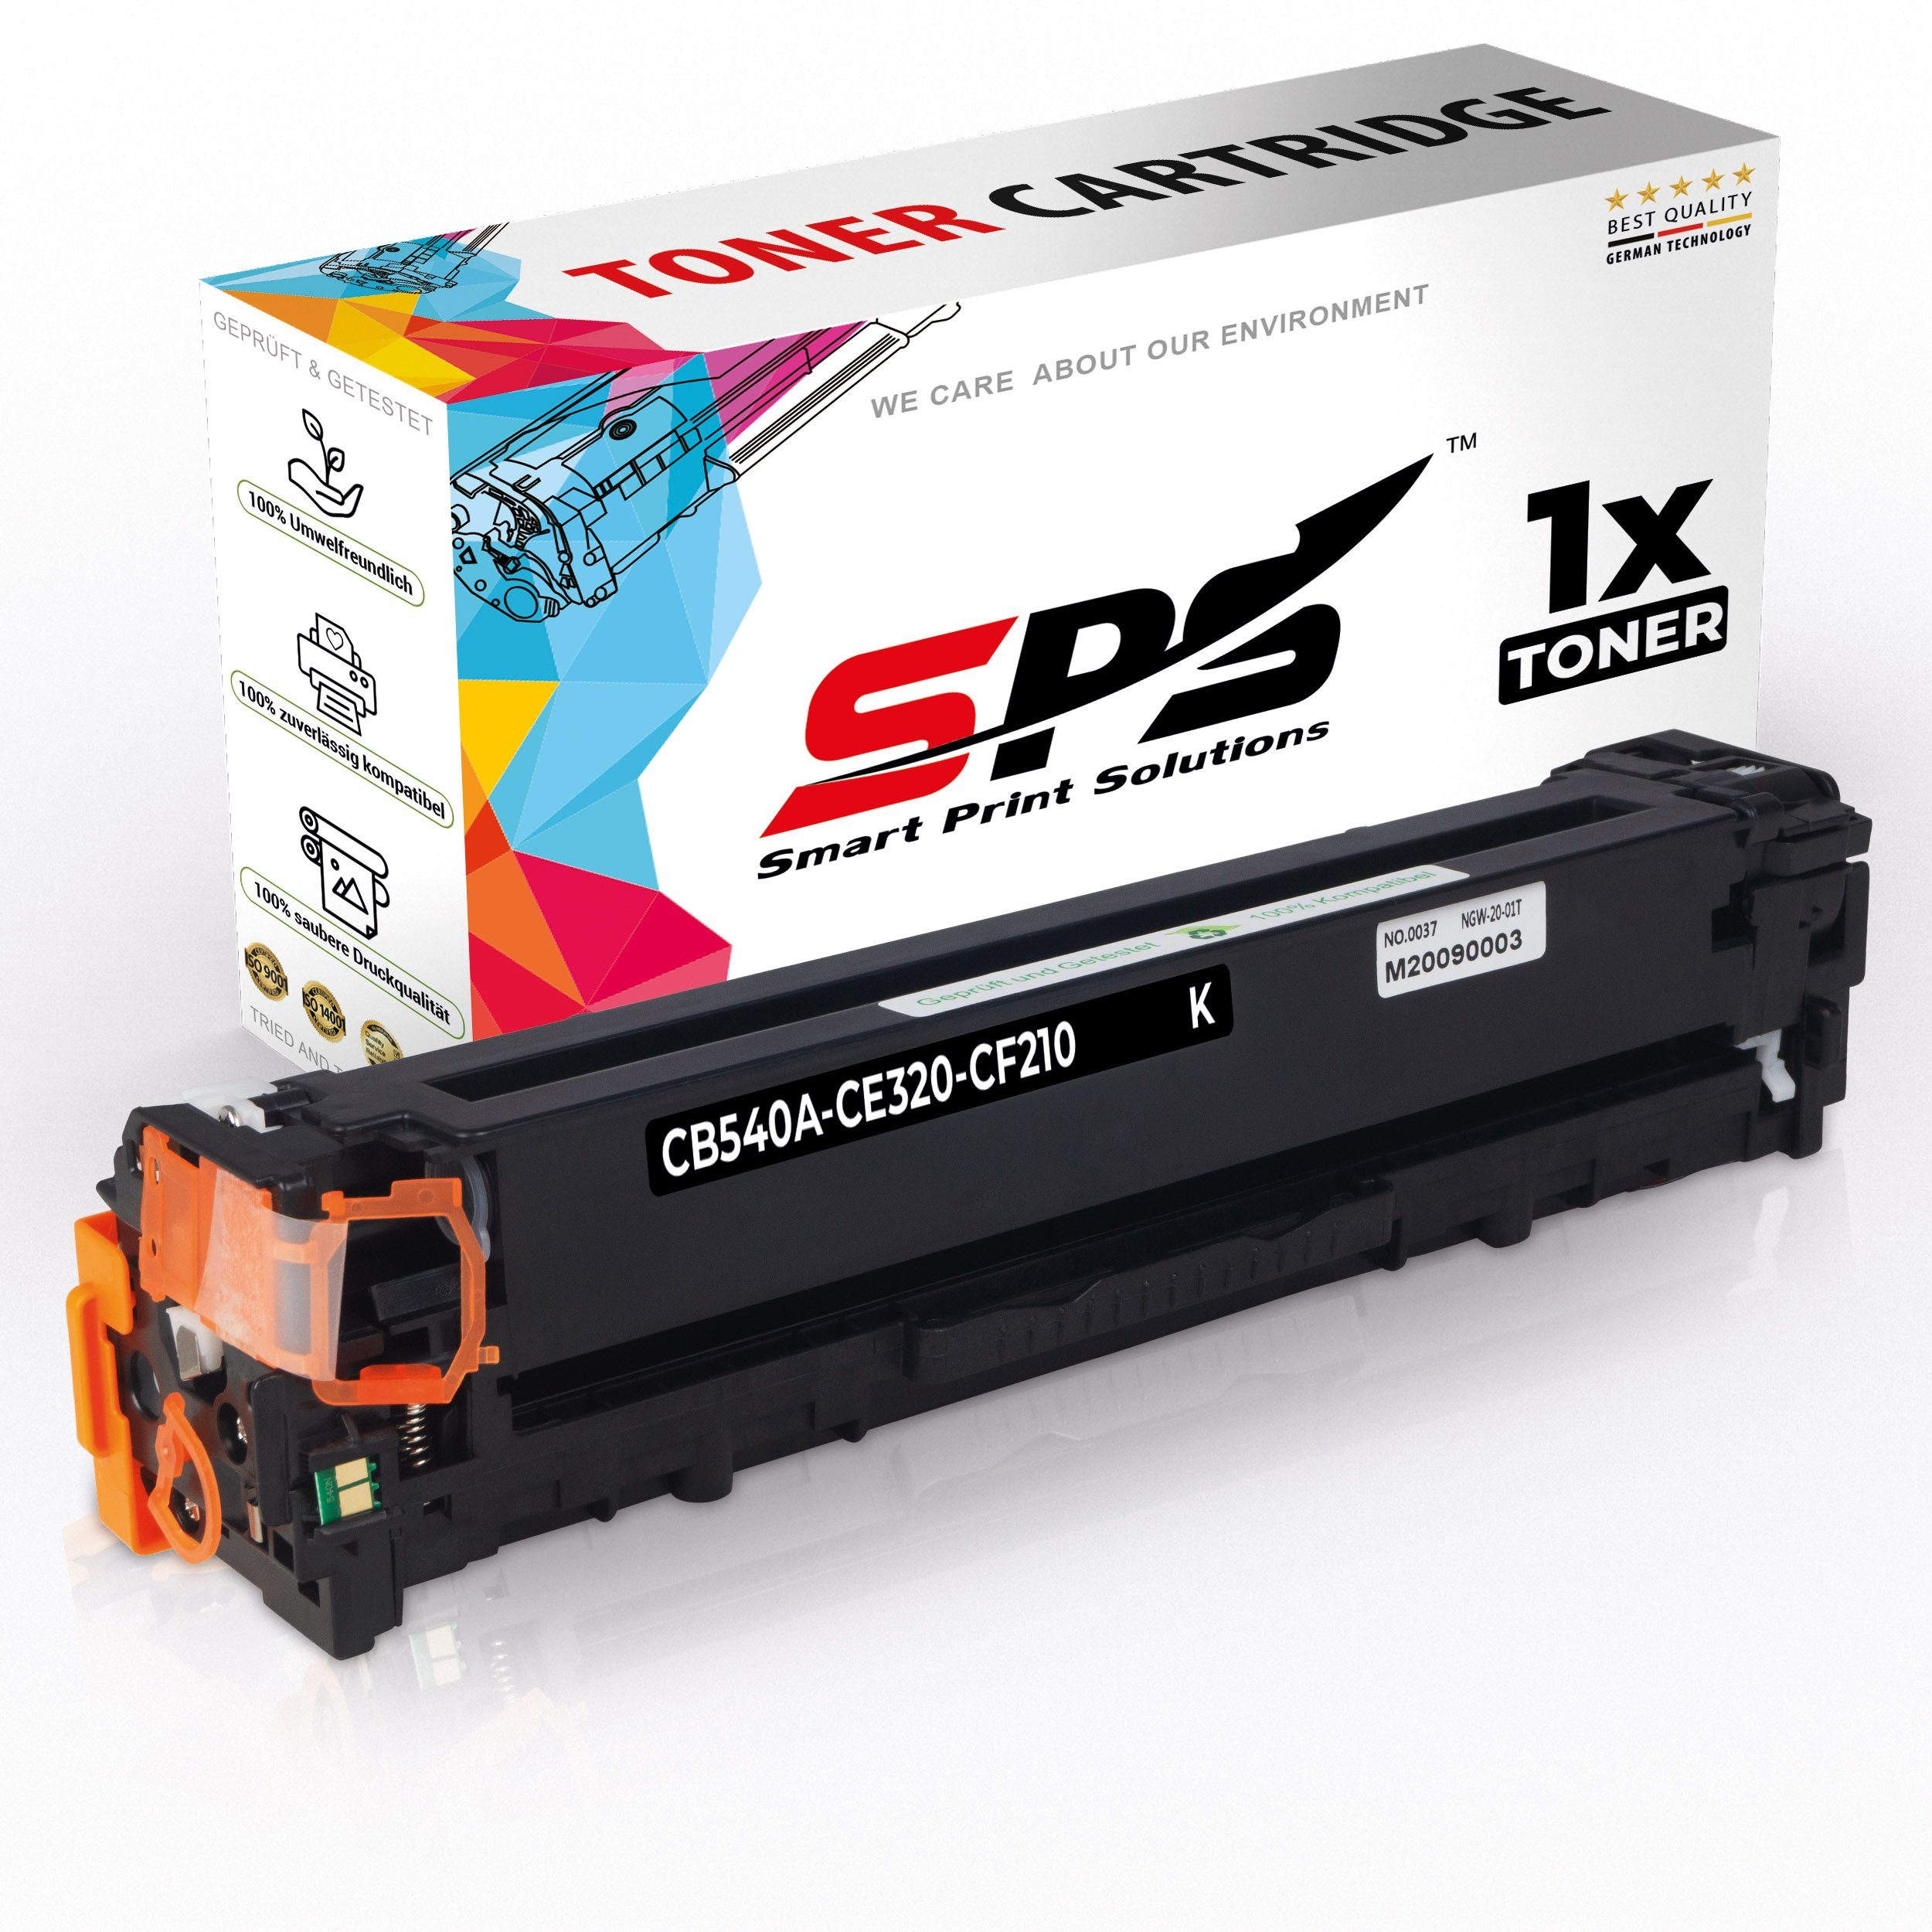 SPS Tonerkartusche Kompatibel für HP Color Laserjet CP1210 125A CB540, (1er Pack)